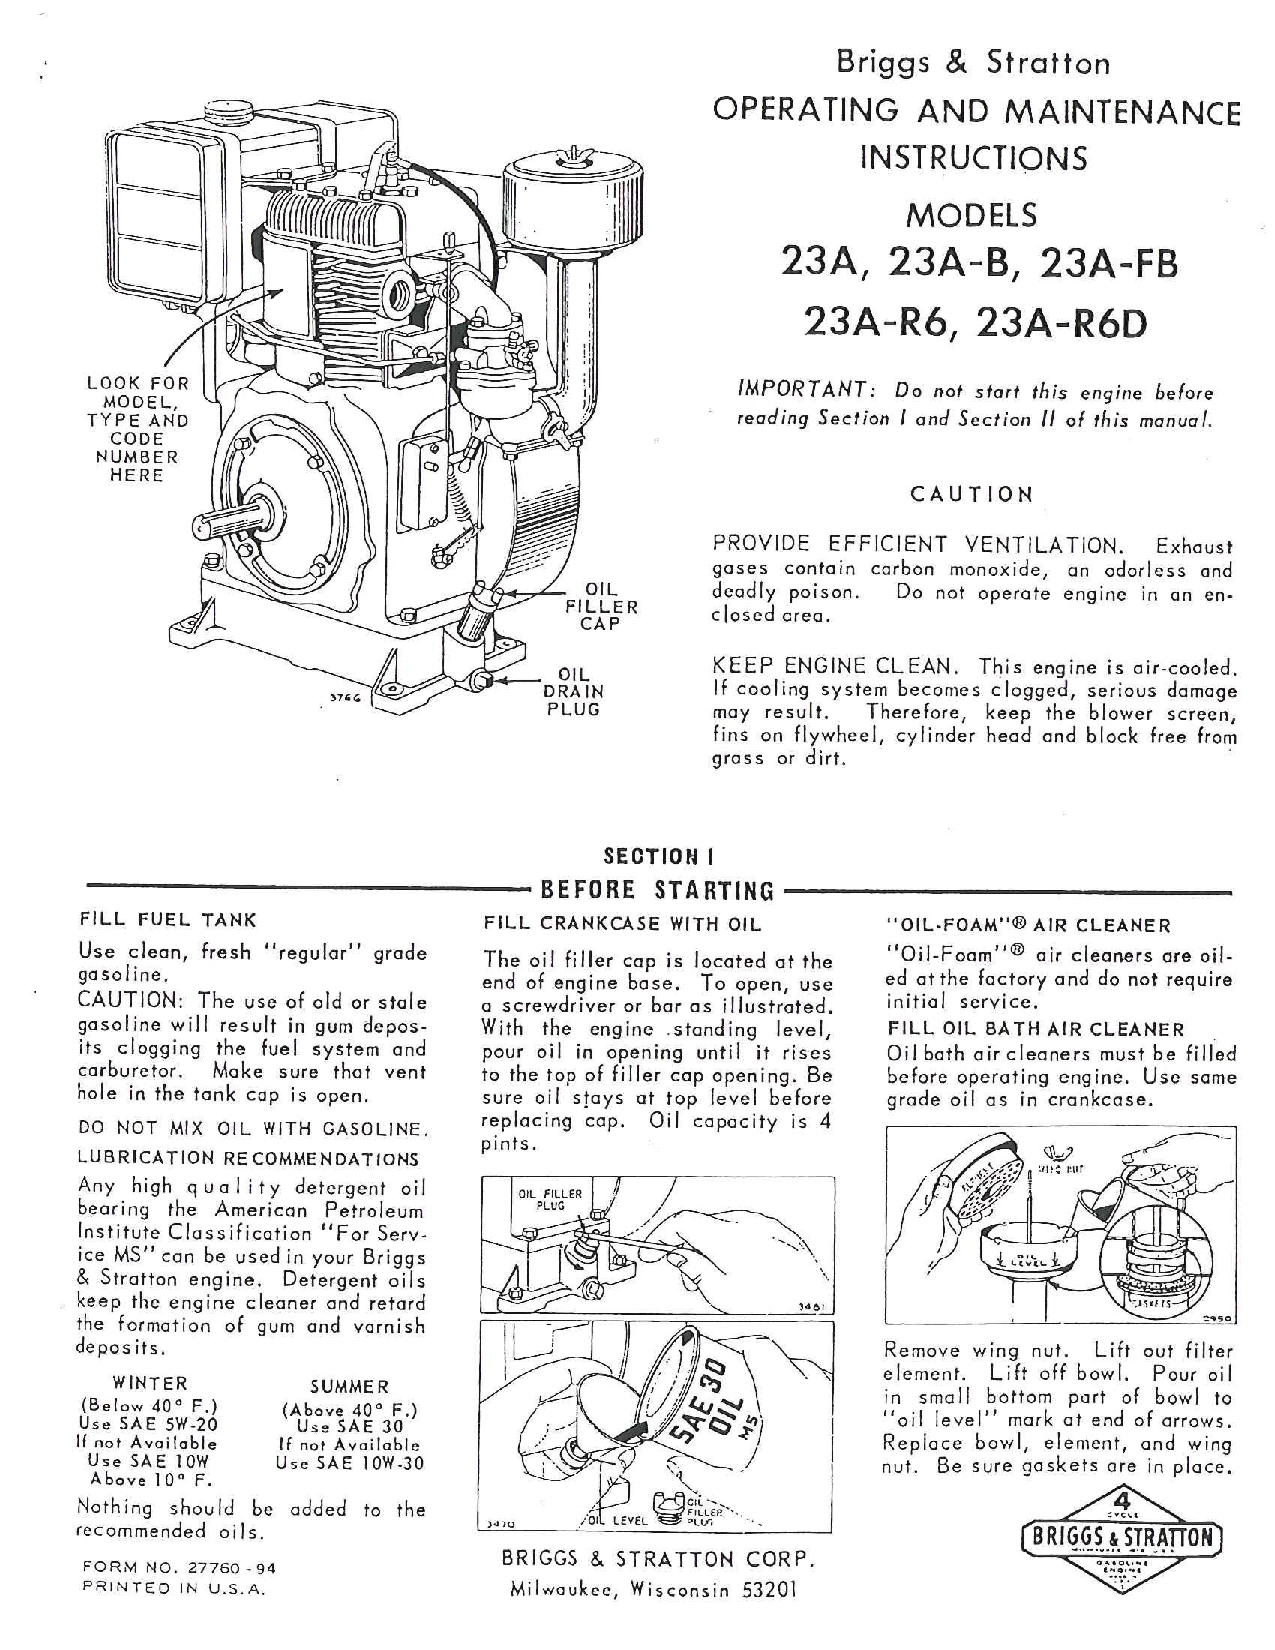 Briggs & Stratton 231-R6D, 23A, 23A-FB, 23A-R6, 23A-B User Manual